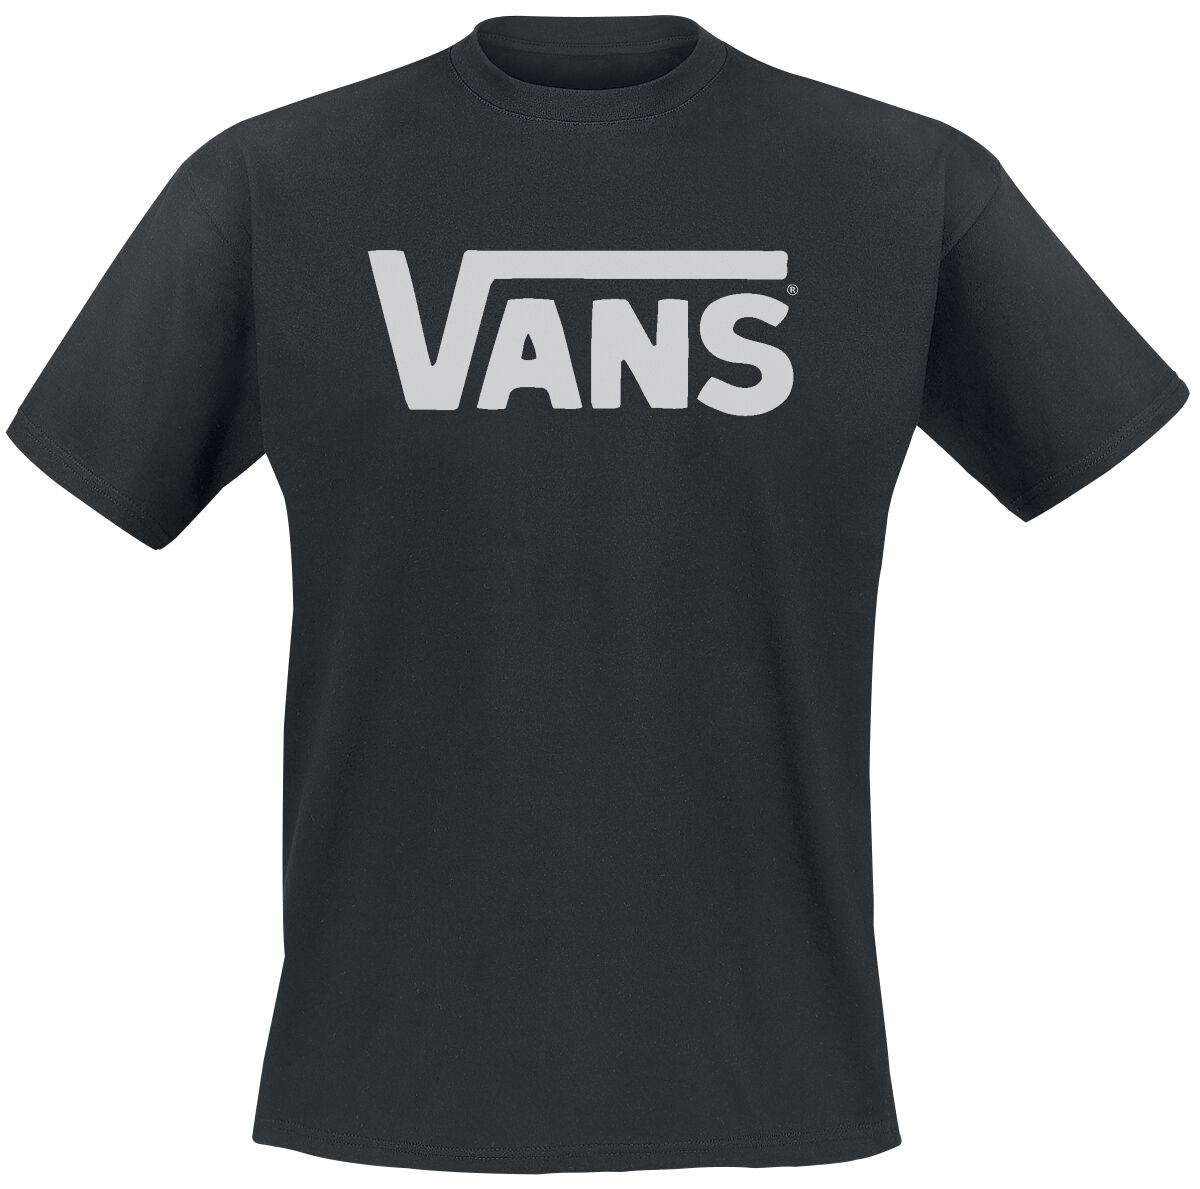 T-Shirt Manches courtes de Vans - Classic - S à XXL - pour Homme - noir/blanc